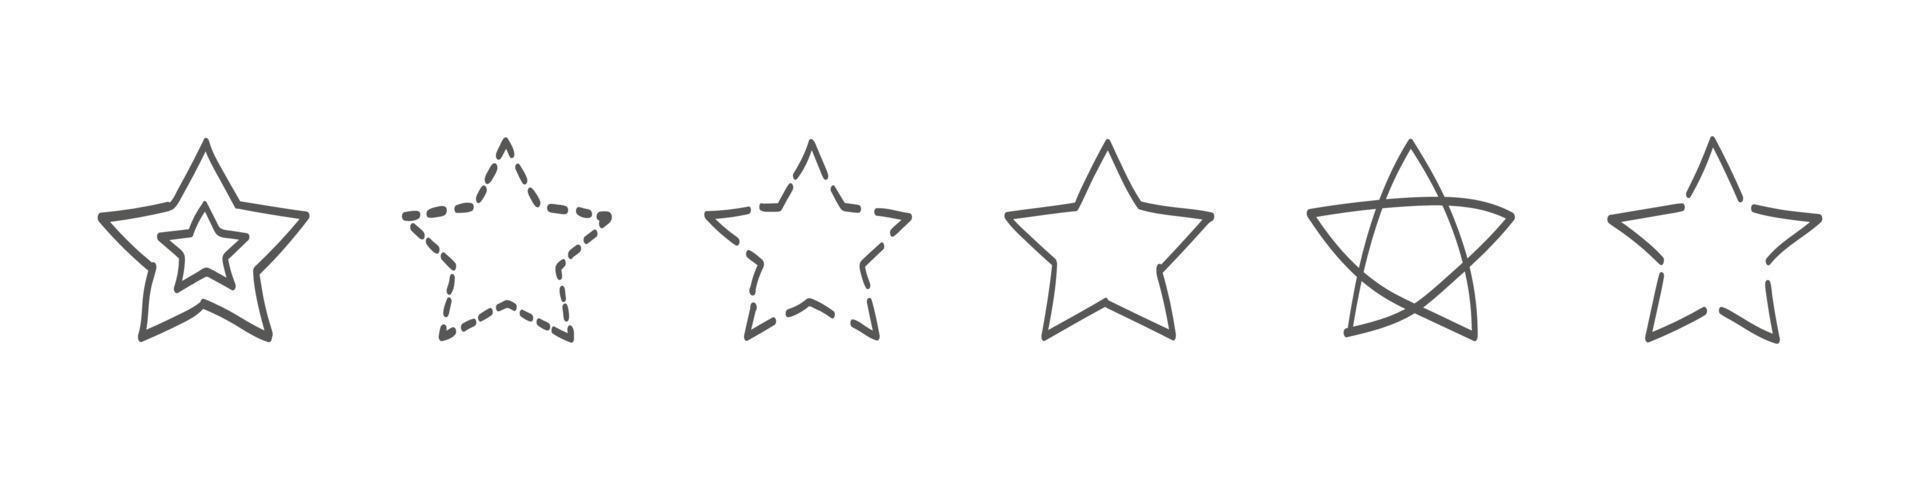 ster tekening verzameling. reeks van hand- getrokken sterren. kattebelletje illustraties. vector illustratie